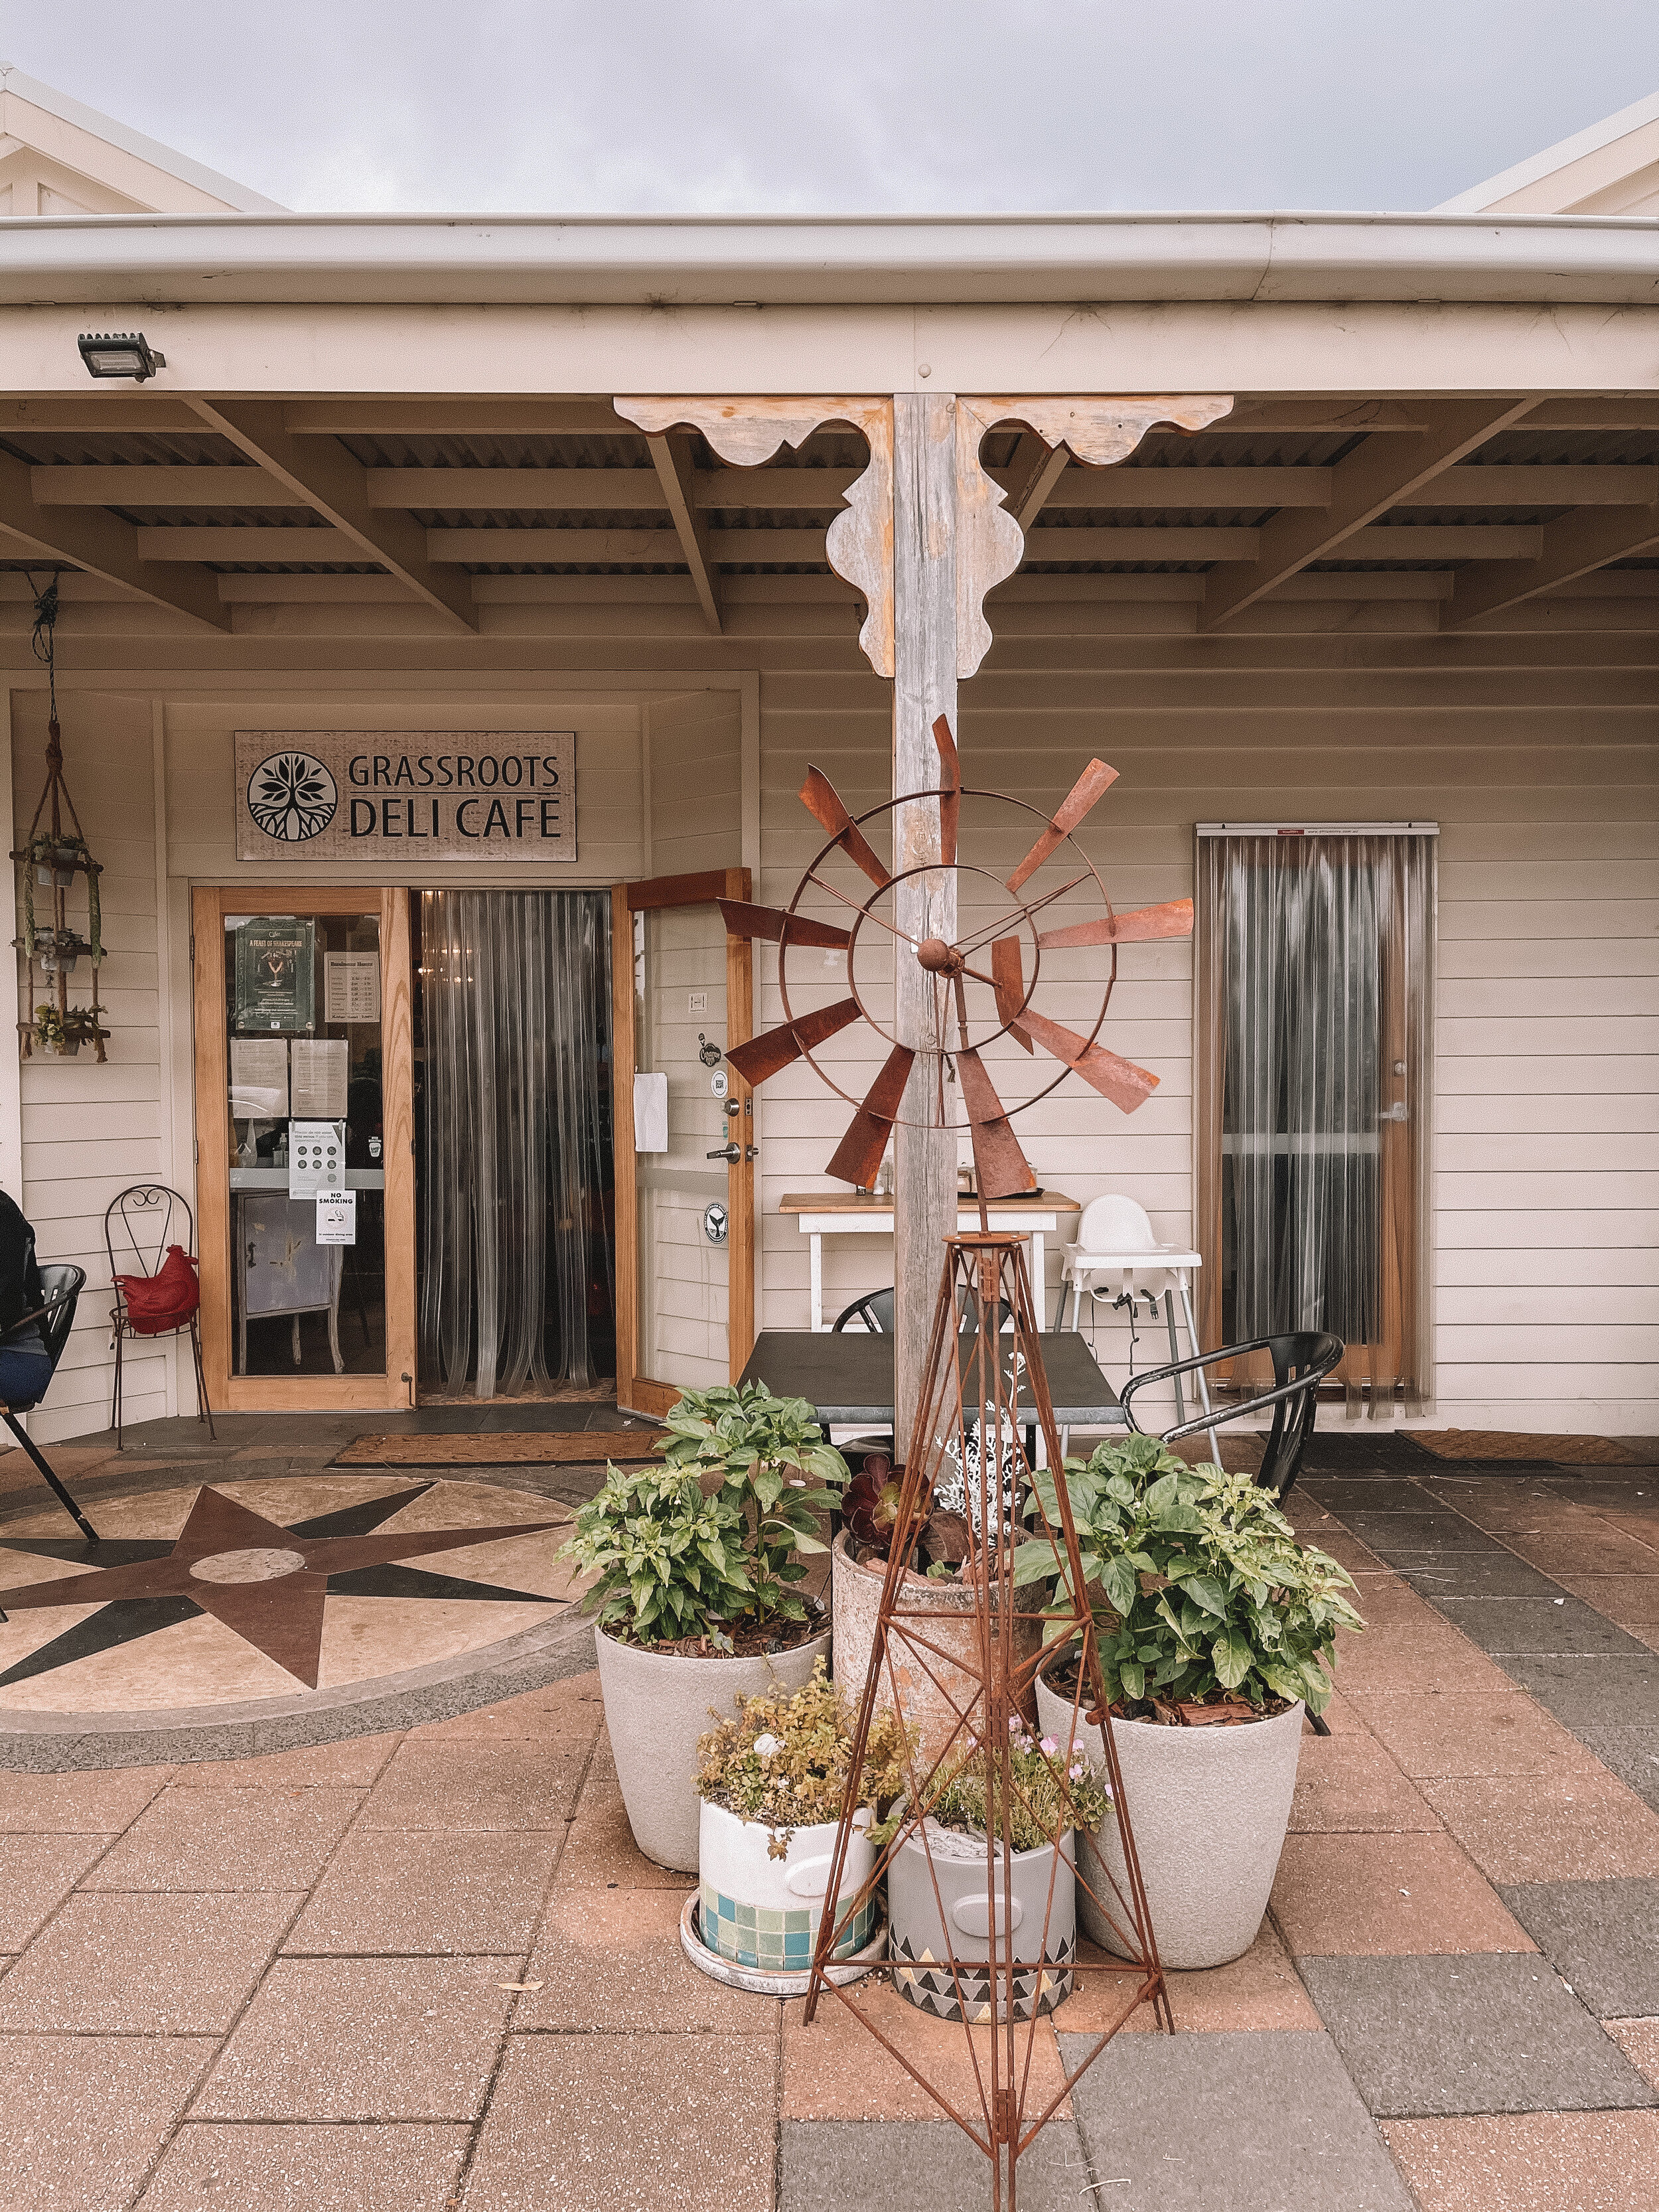 Grassroots Deli Cafe - Port Campbell - Great Ocean Road - Victoria - Australia